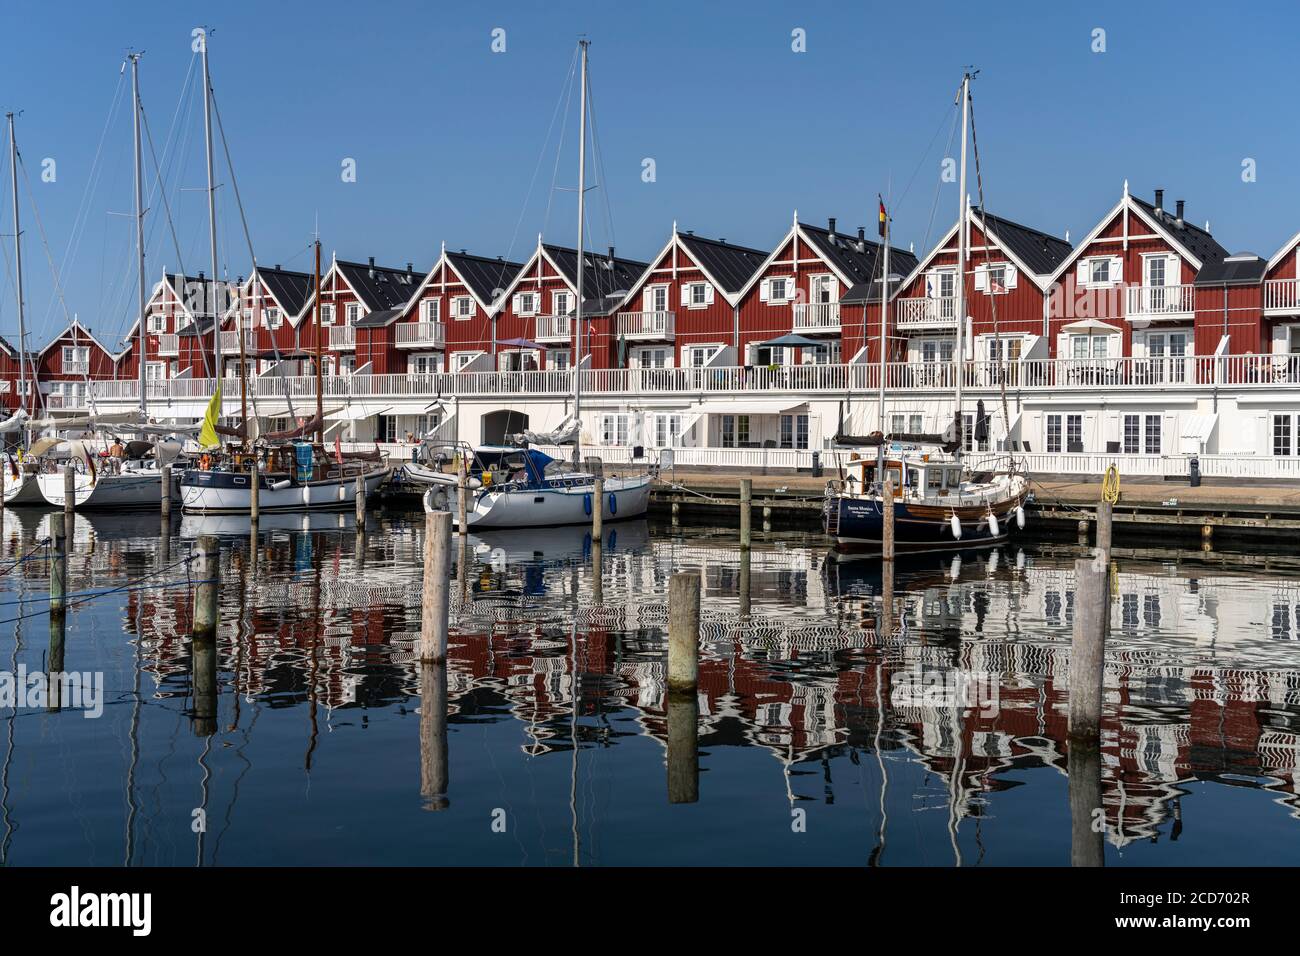 Hafen von Bagenkop, Insel Langeland, Dänemark, Europa | Bagenkop Marina, Langeland Island, Danemark, Europe Banque D'Images